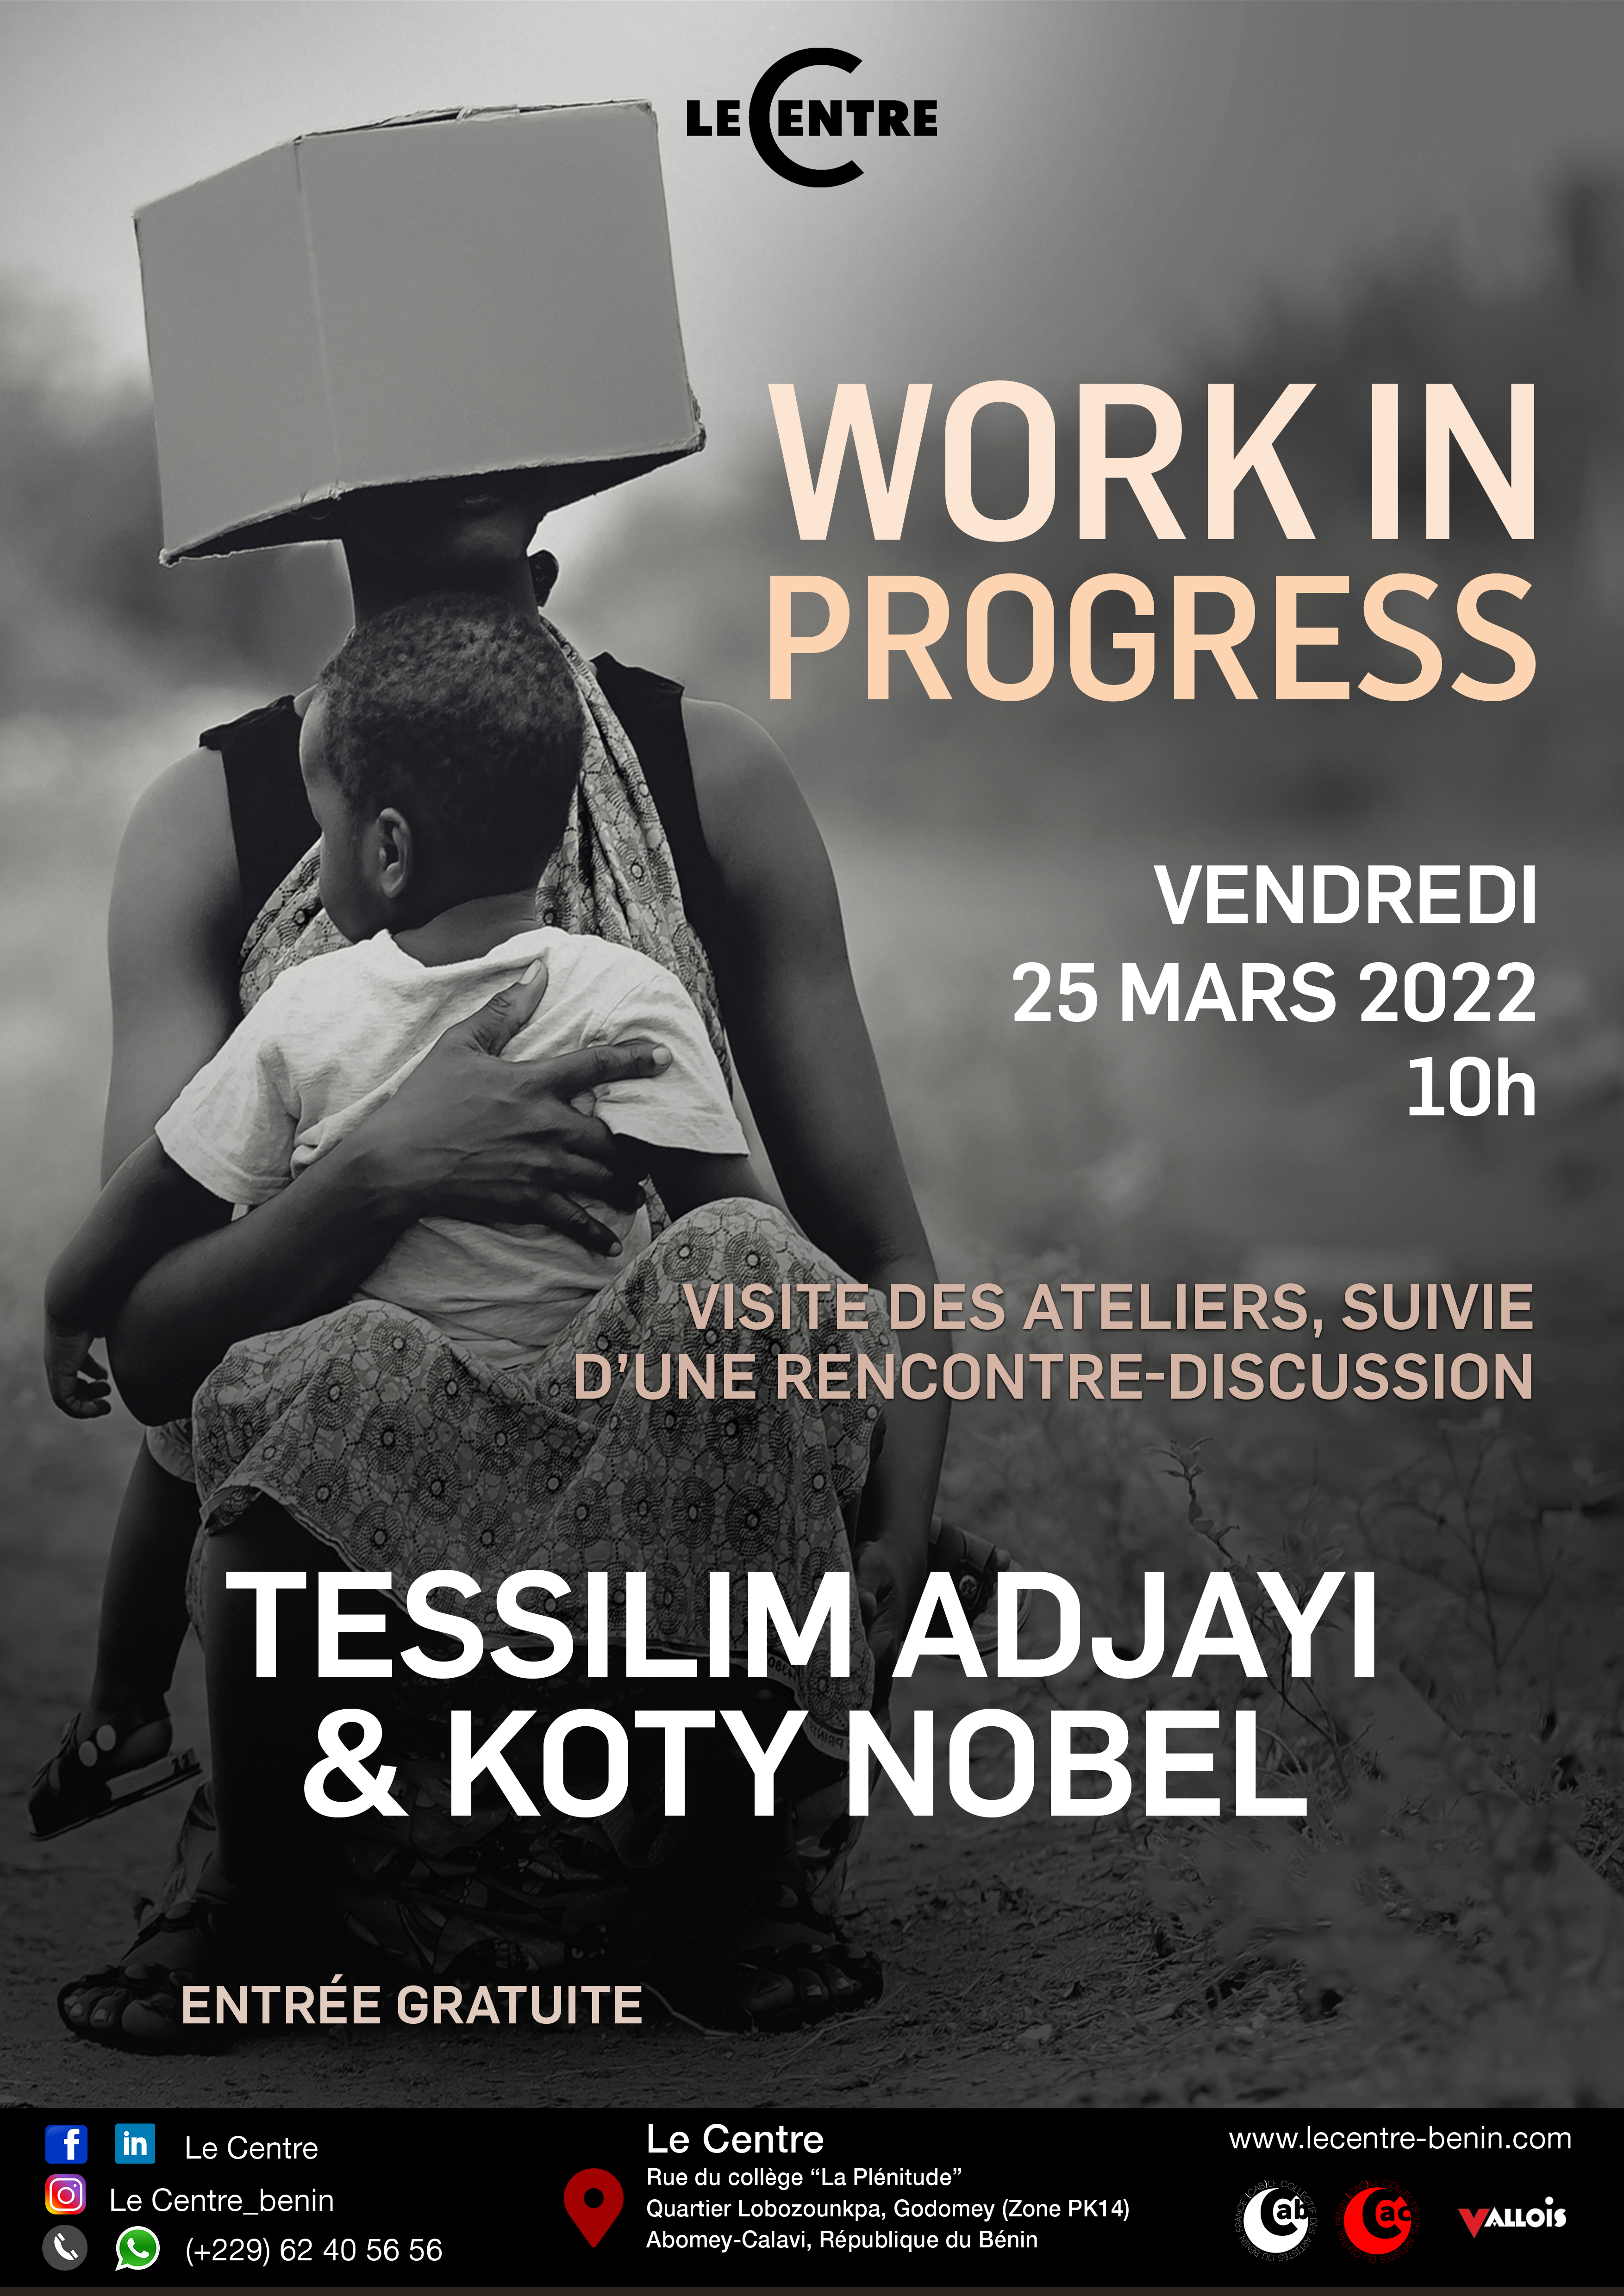 Tessilim Adjayi & Nobel Koty